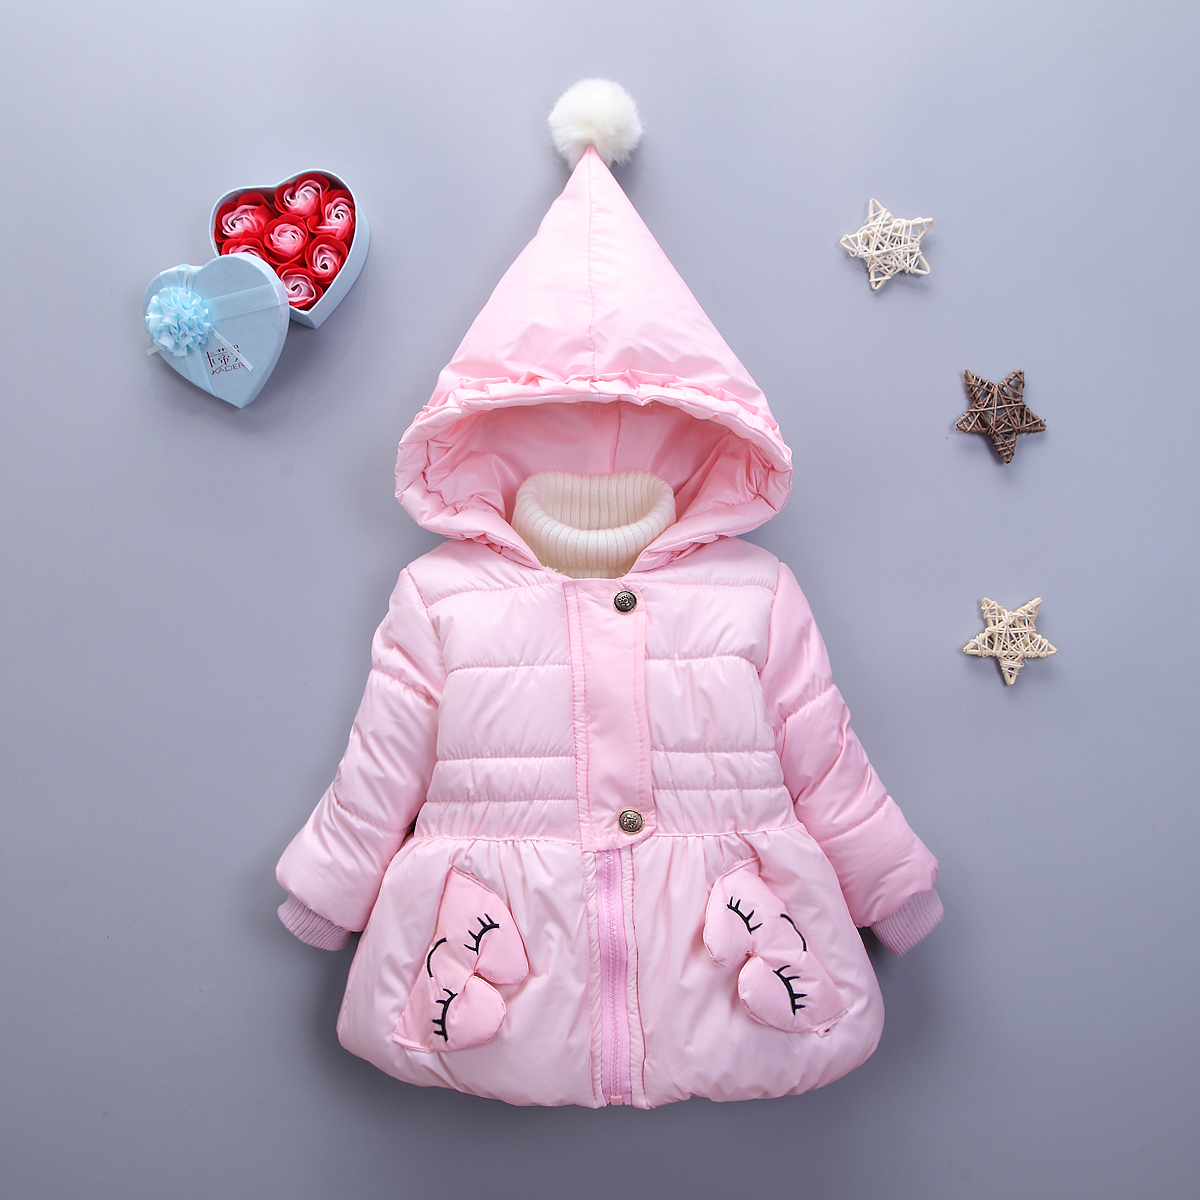 宝宝冬装2016新款0-1-2-3-4岁婴儿棉衣套装加绒加厚女童棉衣保暖折扣优惠信息